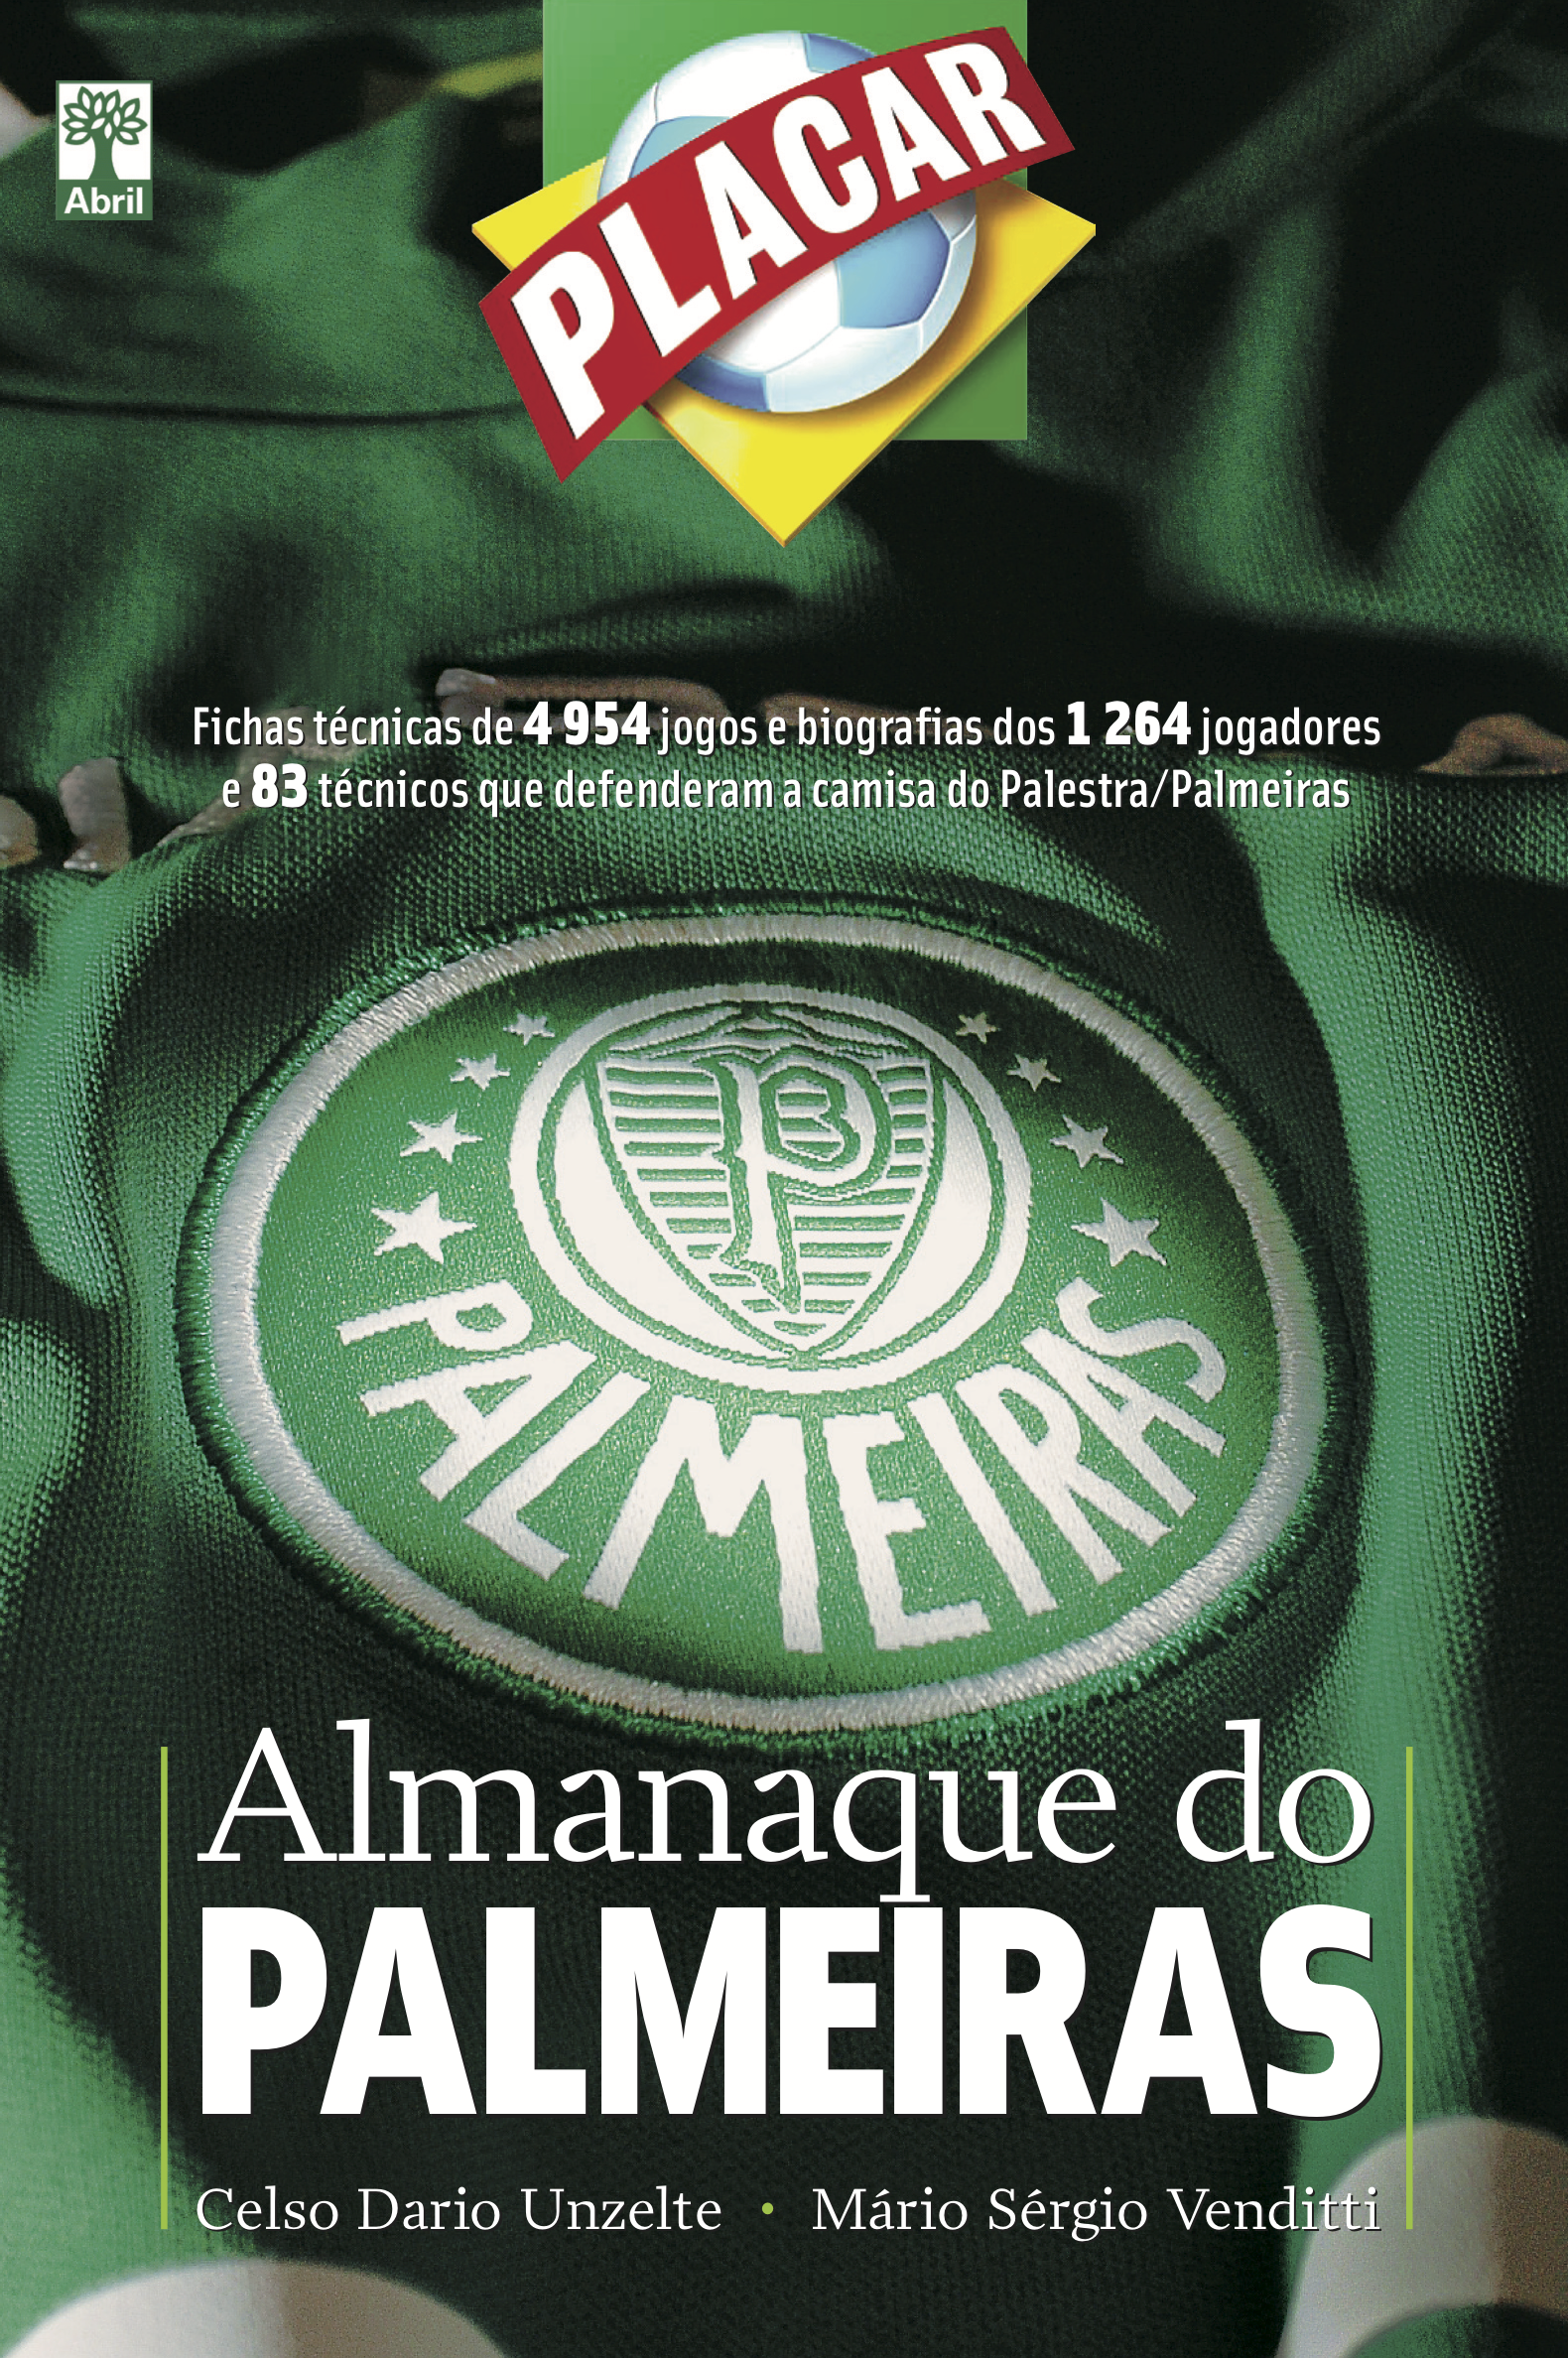 Almanaque do Palmeiras está de volta -